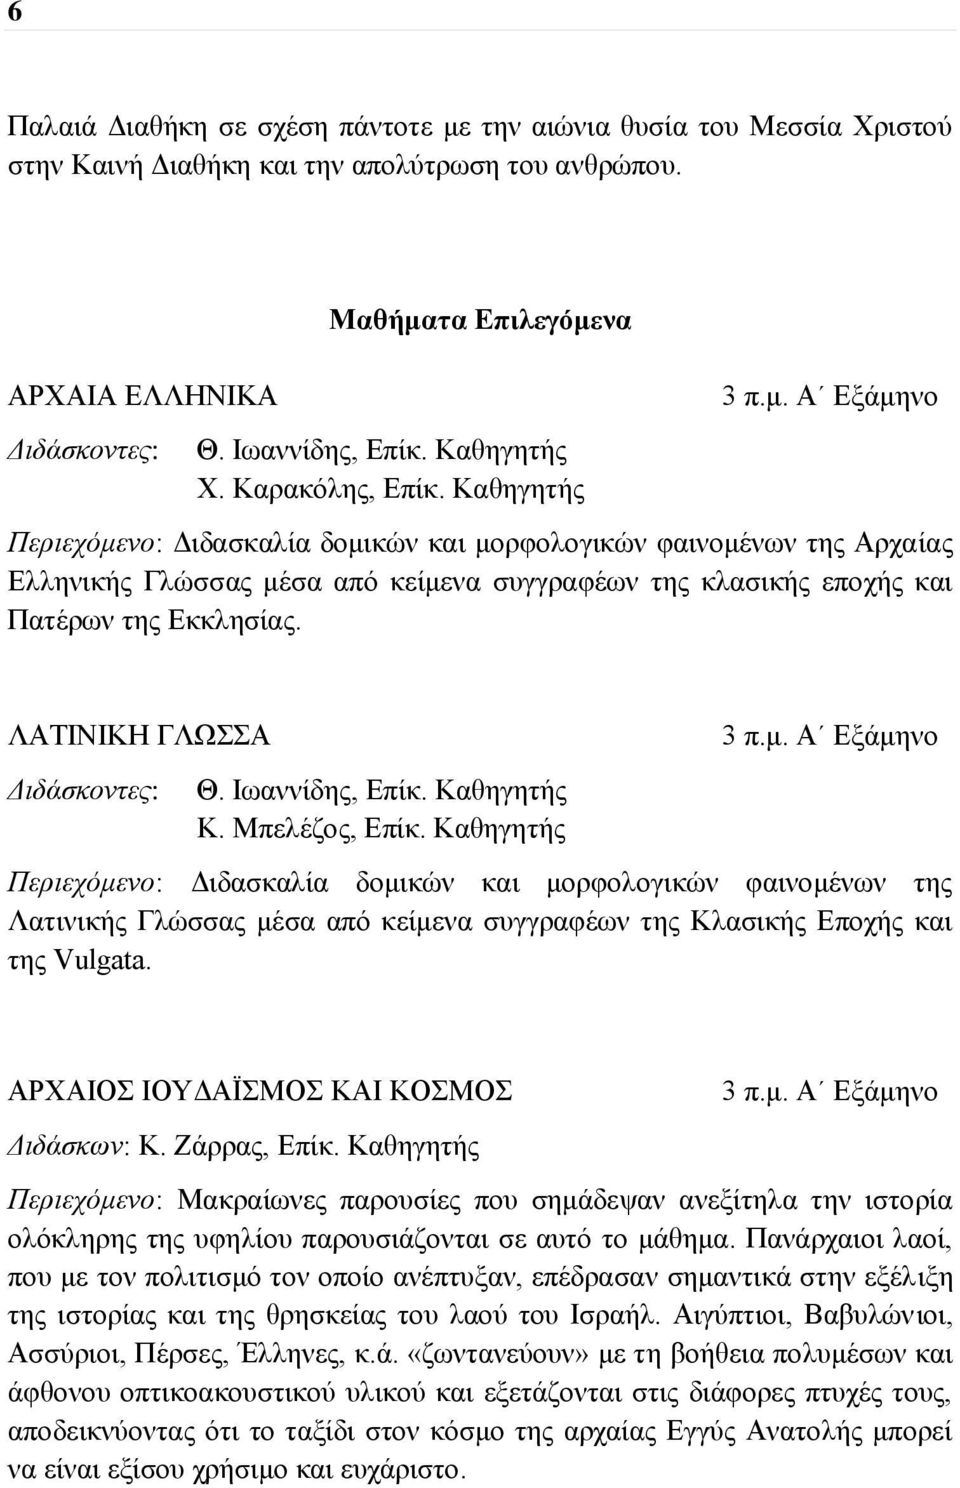 Α Εξάμηνο Περιεχόμενο: Διδασκαλία δομικών και μορφολογικών φαινομένων της Αρχαίας Ελληνικής Γλώσσας μέσα από κείμενα συγγραφέων της κλασικής εποχής και Πατέρων της Εκκλησίας.